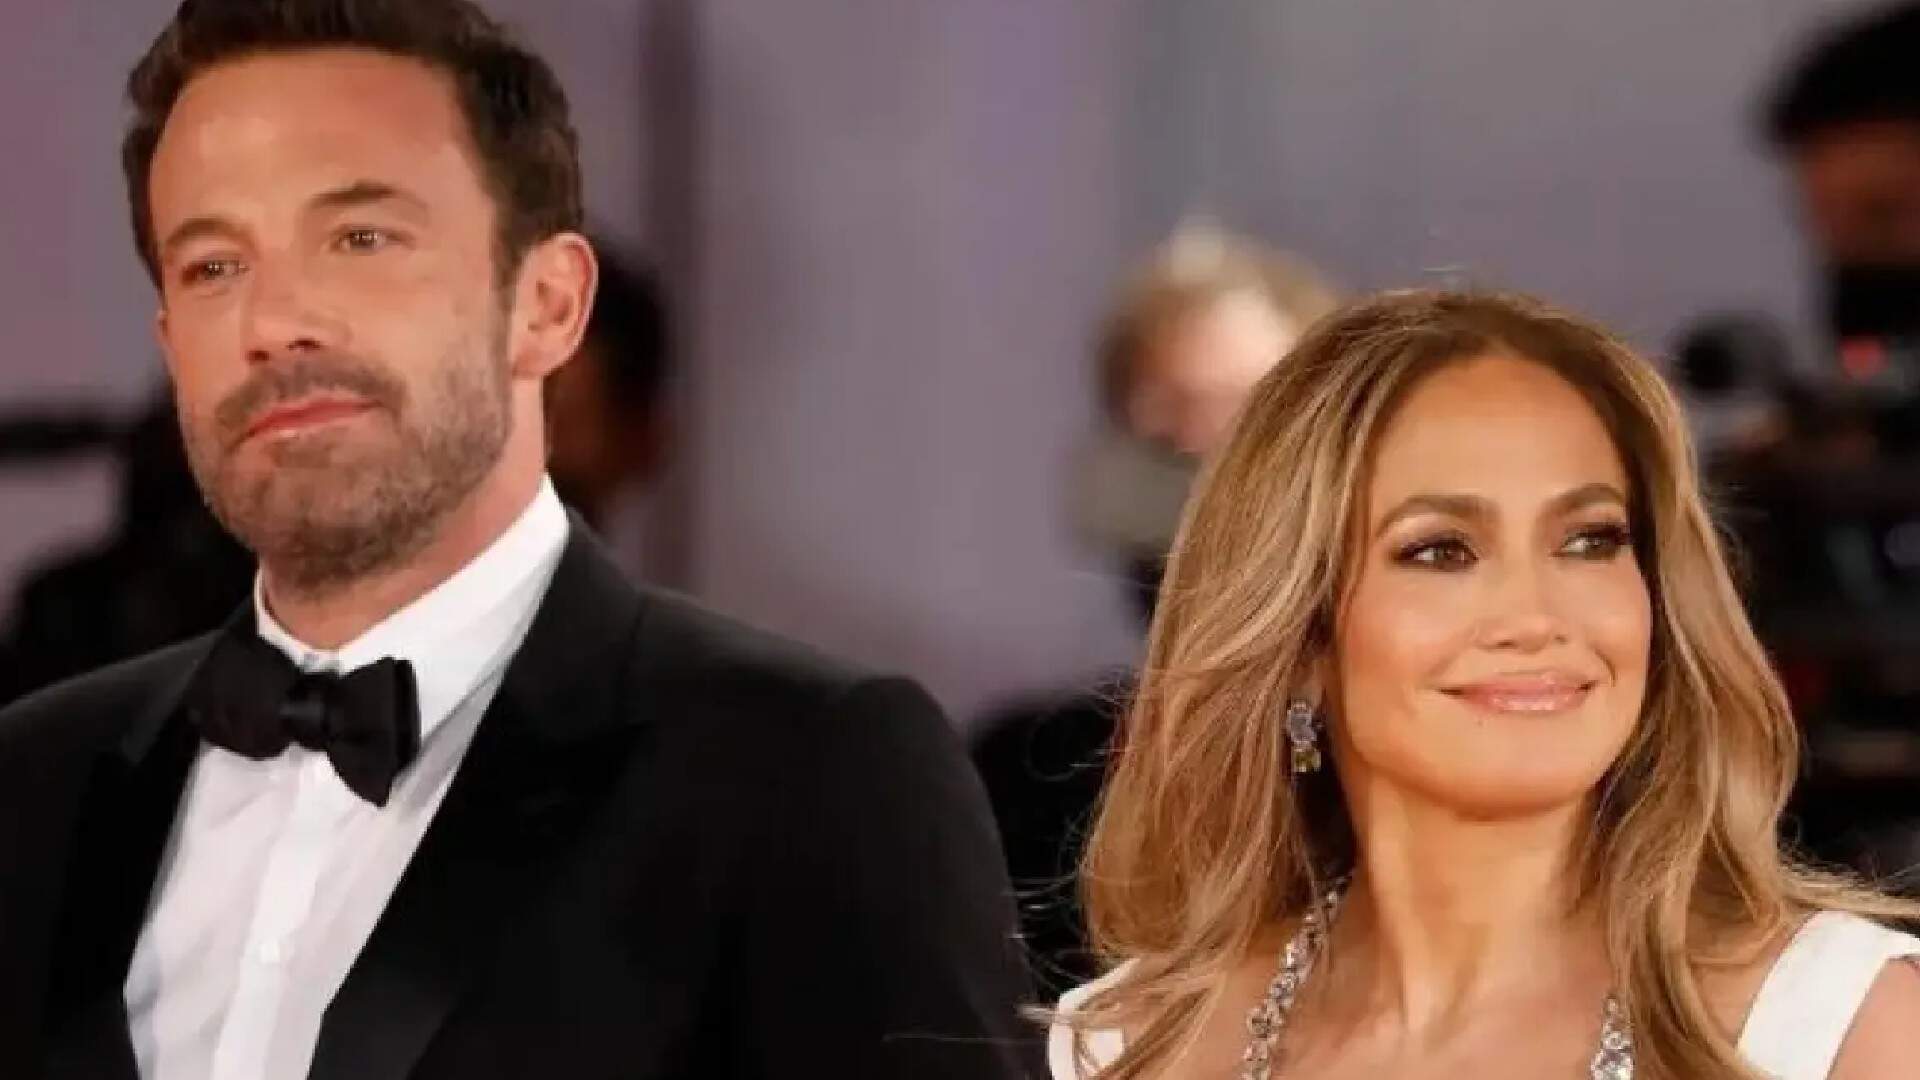 Certidão de casamento de Jennifer Lopez e Ben Affleck vaza na web e detalhes curiosos são expostos - Metropolitana FM